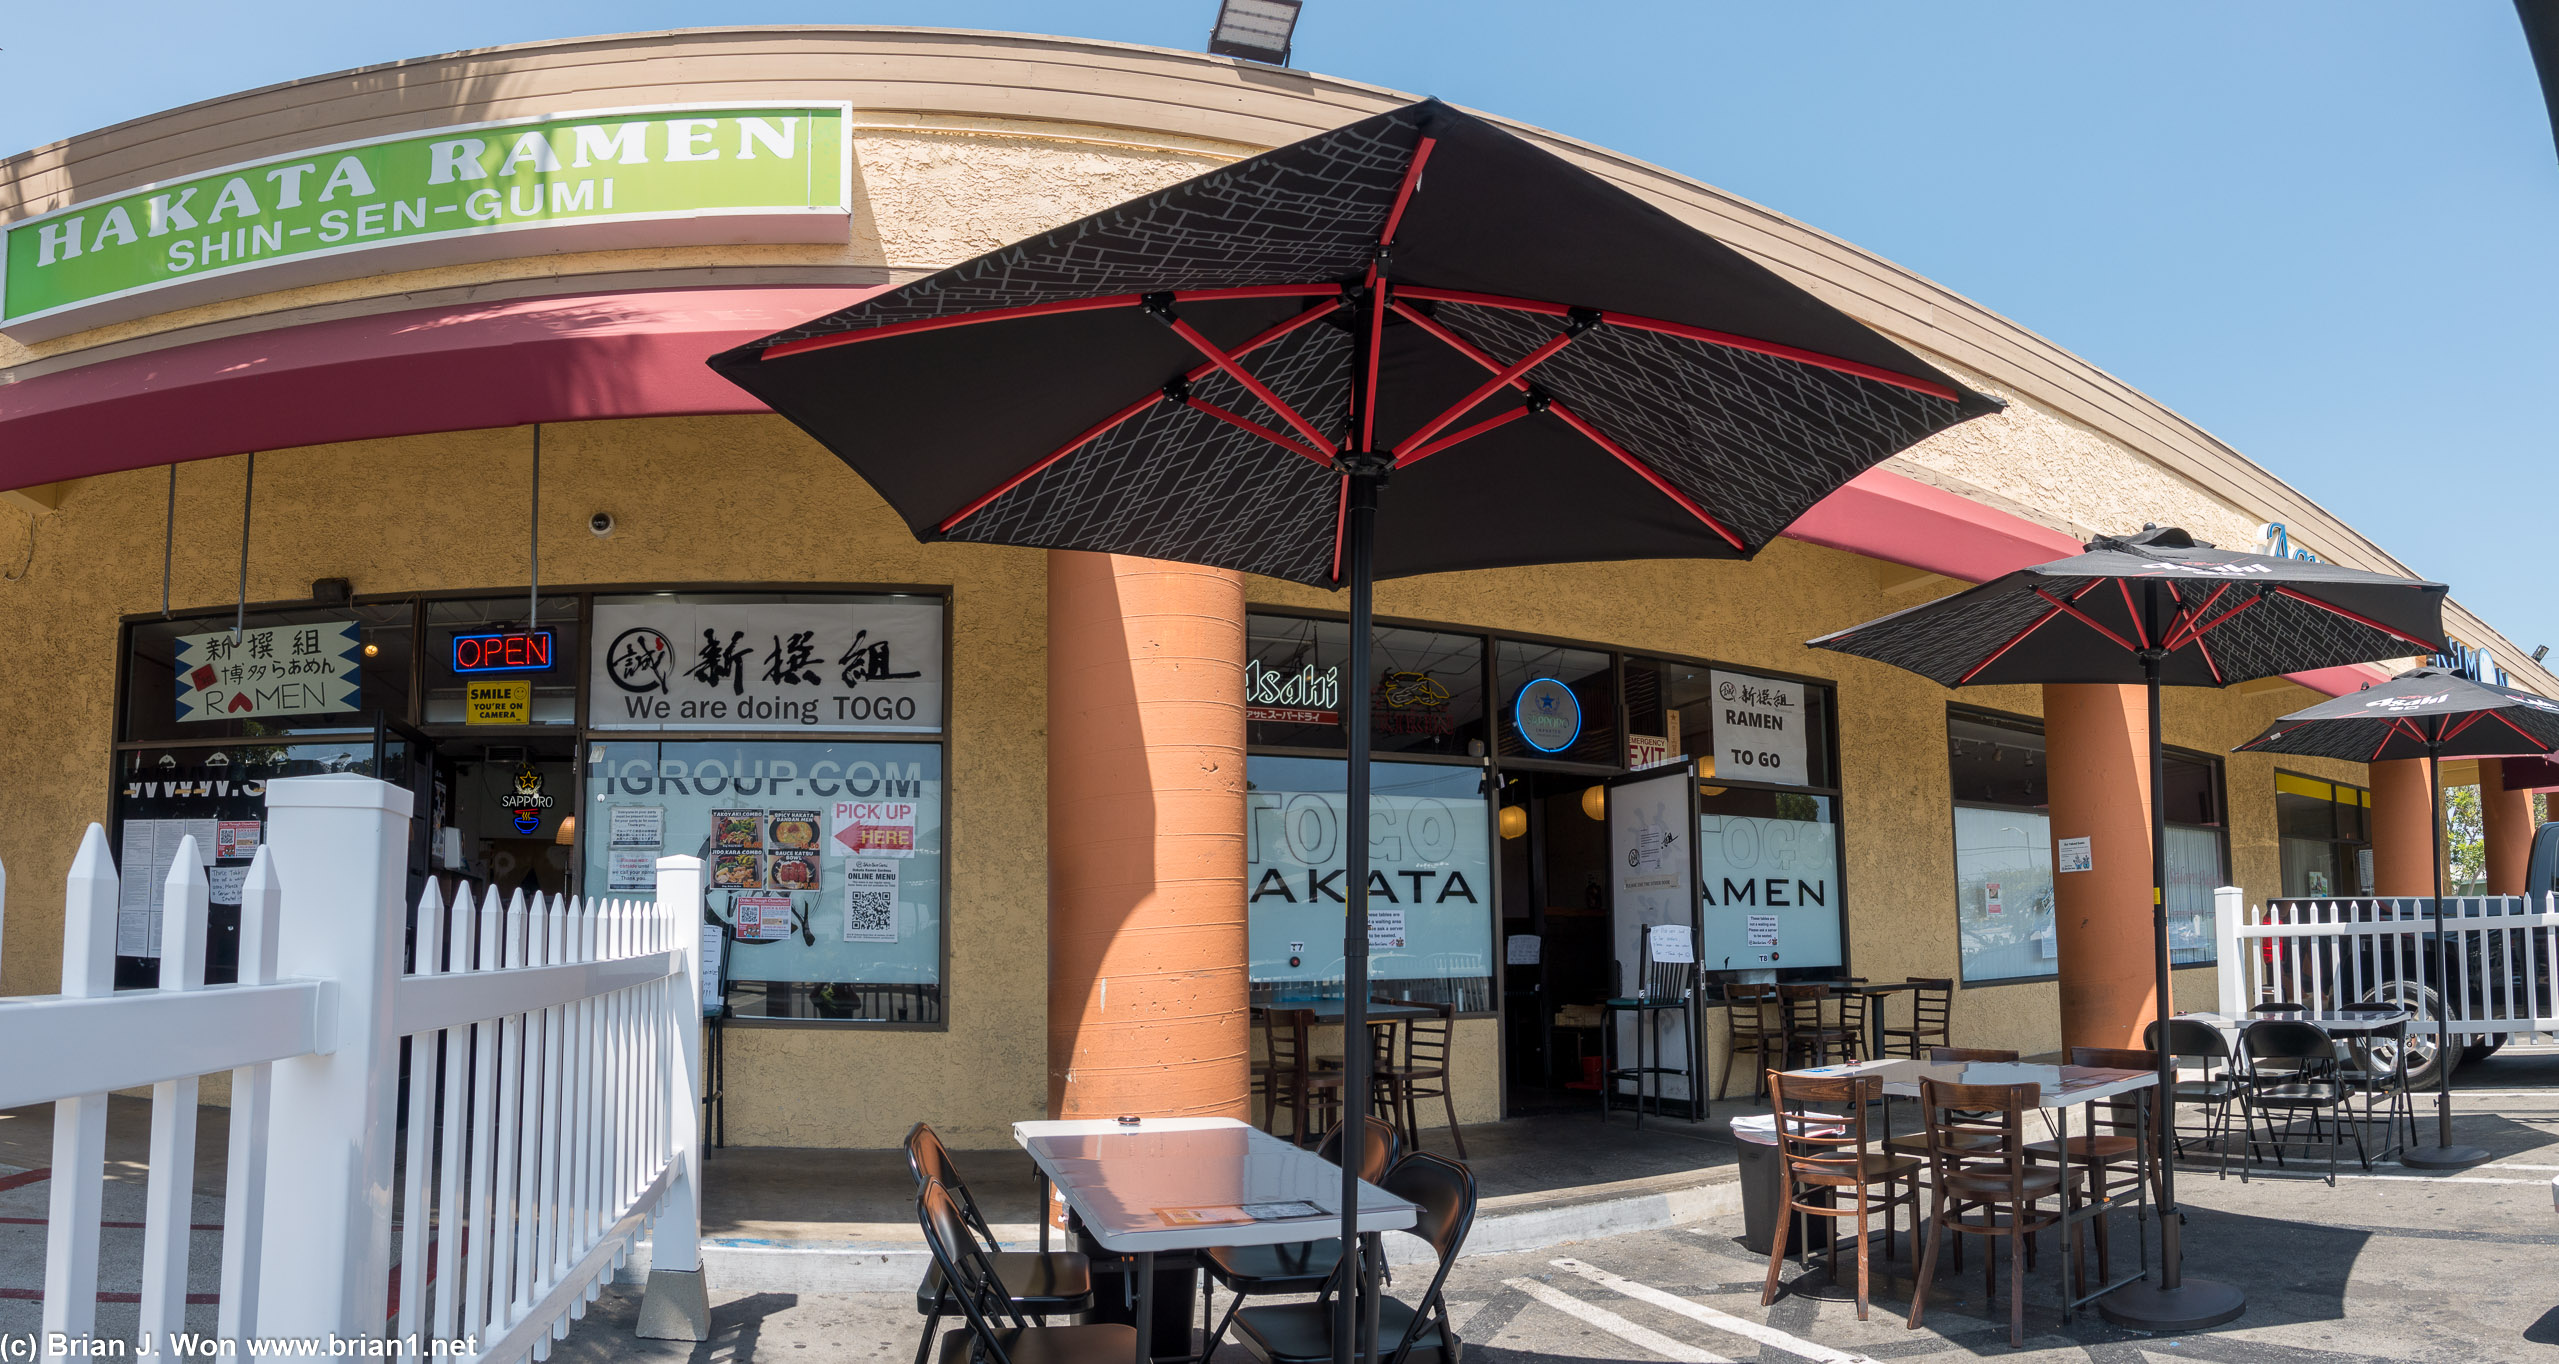 Outdoor dining at Shin Sen Gumi Hakata Ramen's original location.